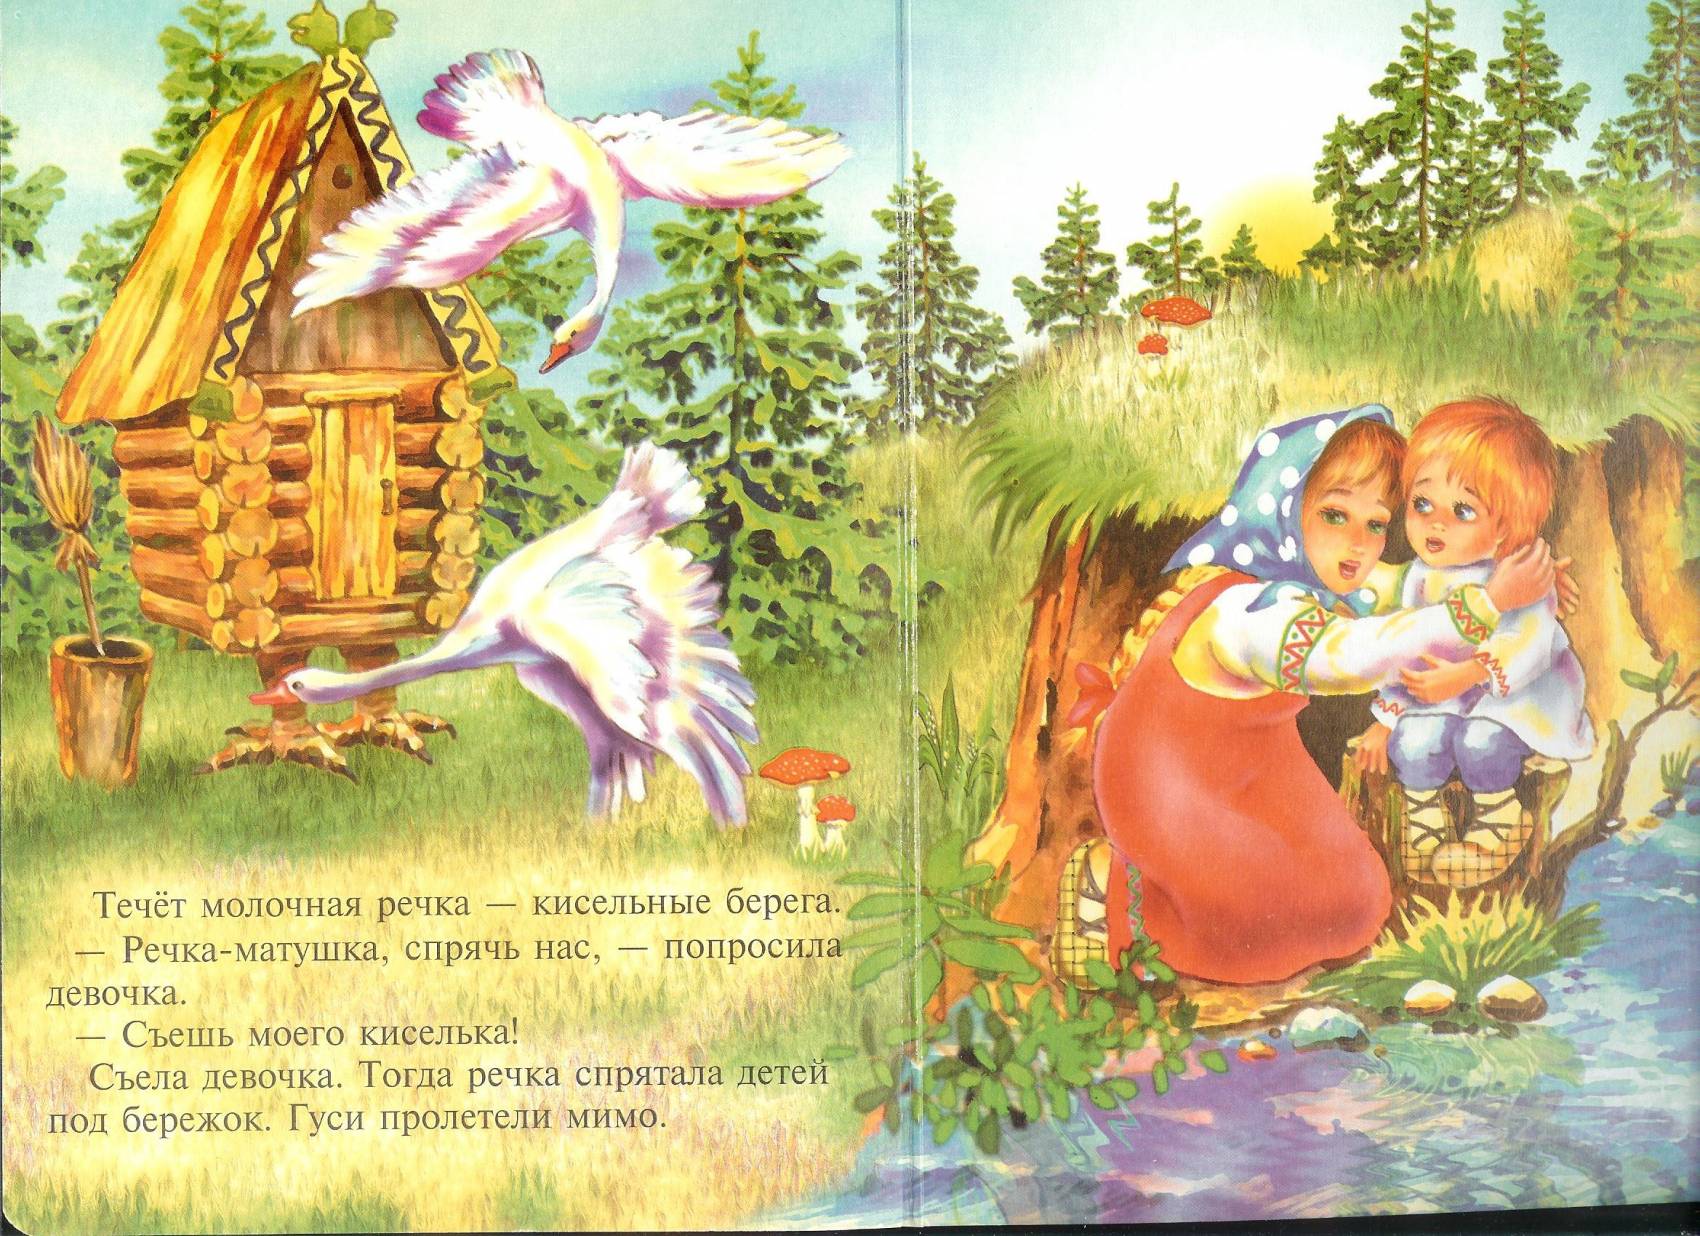 Картинка гуси лебеди для детей из сказки